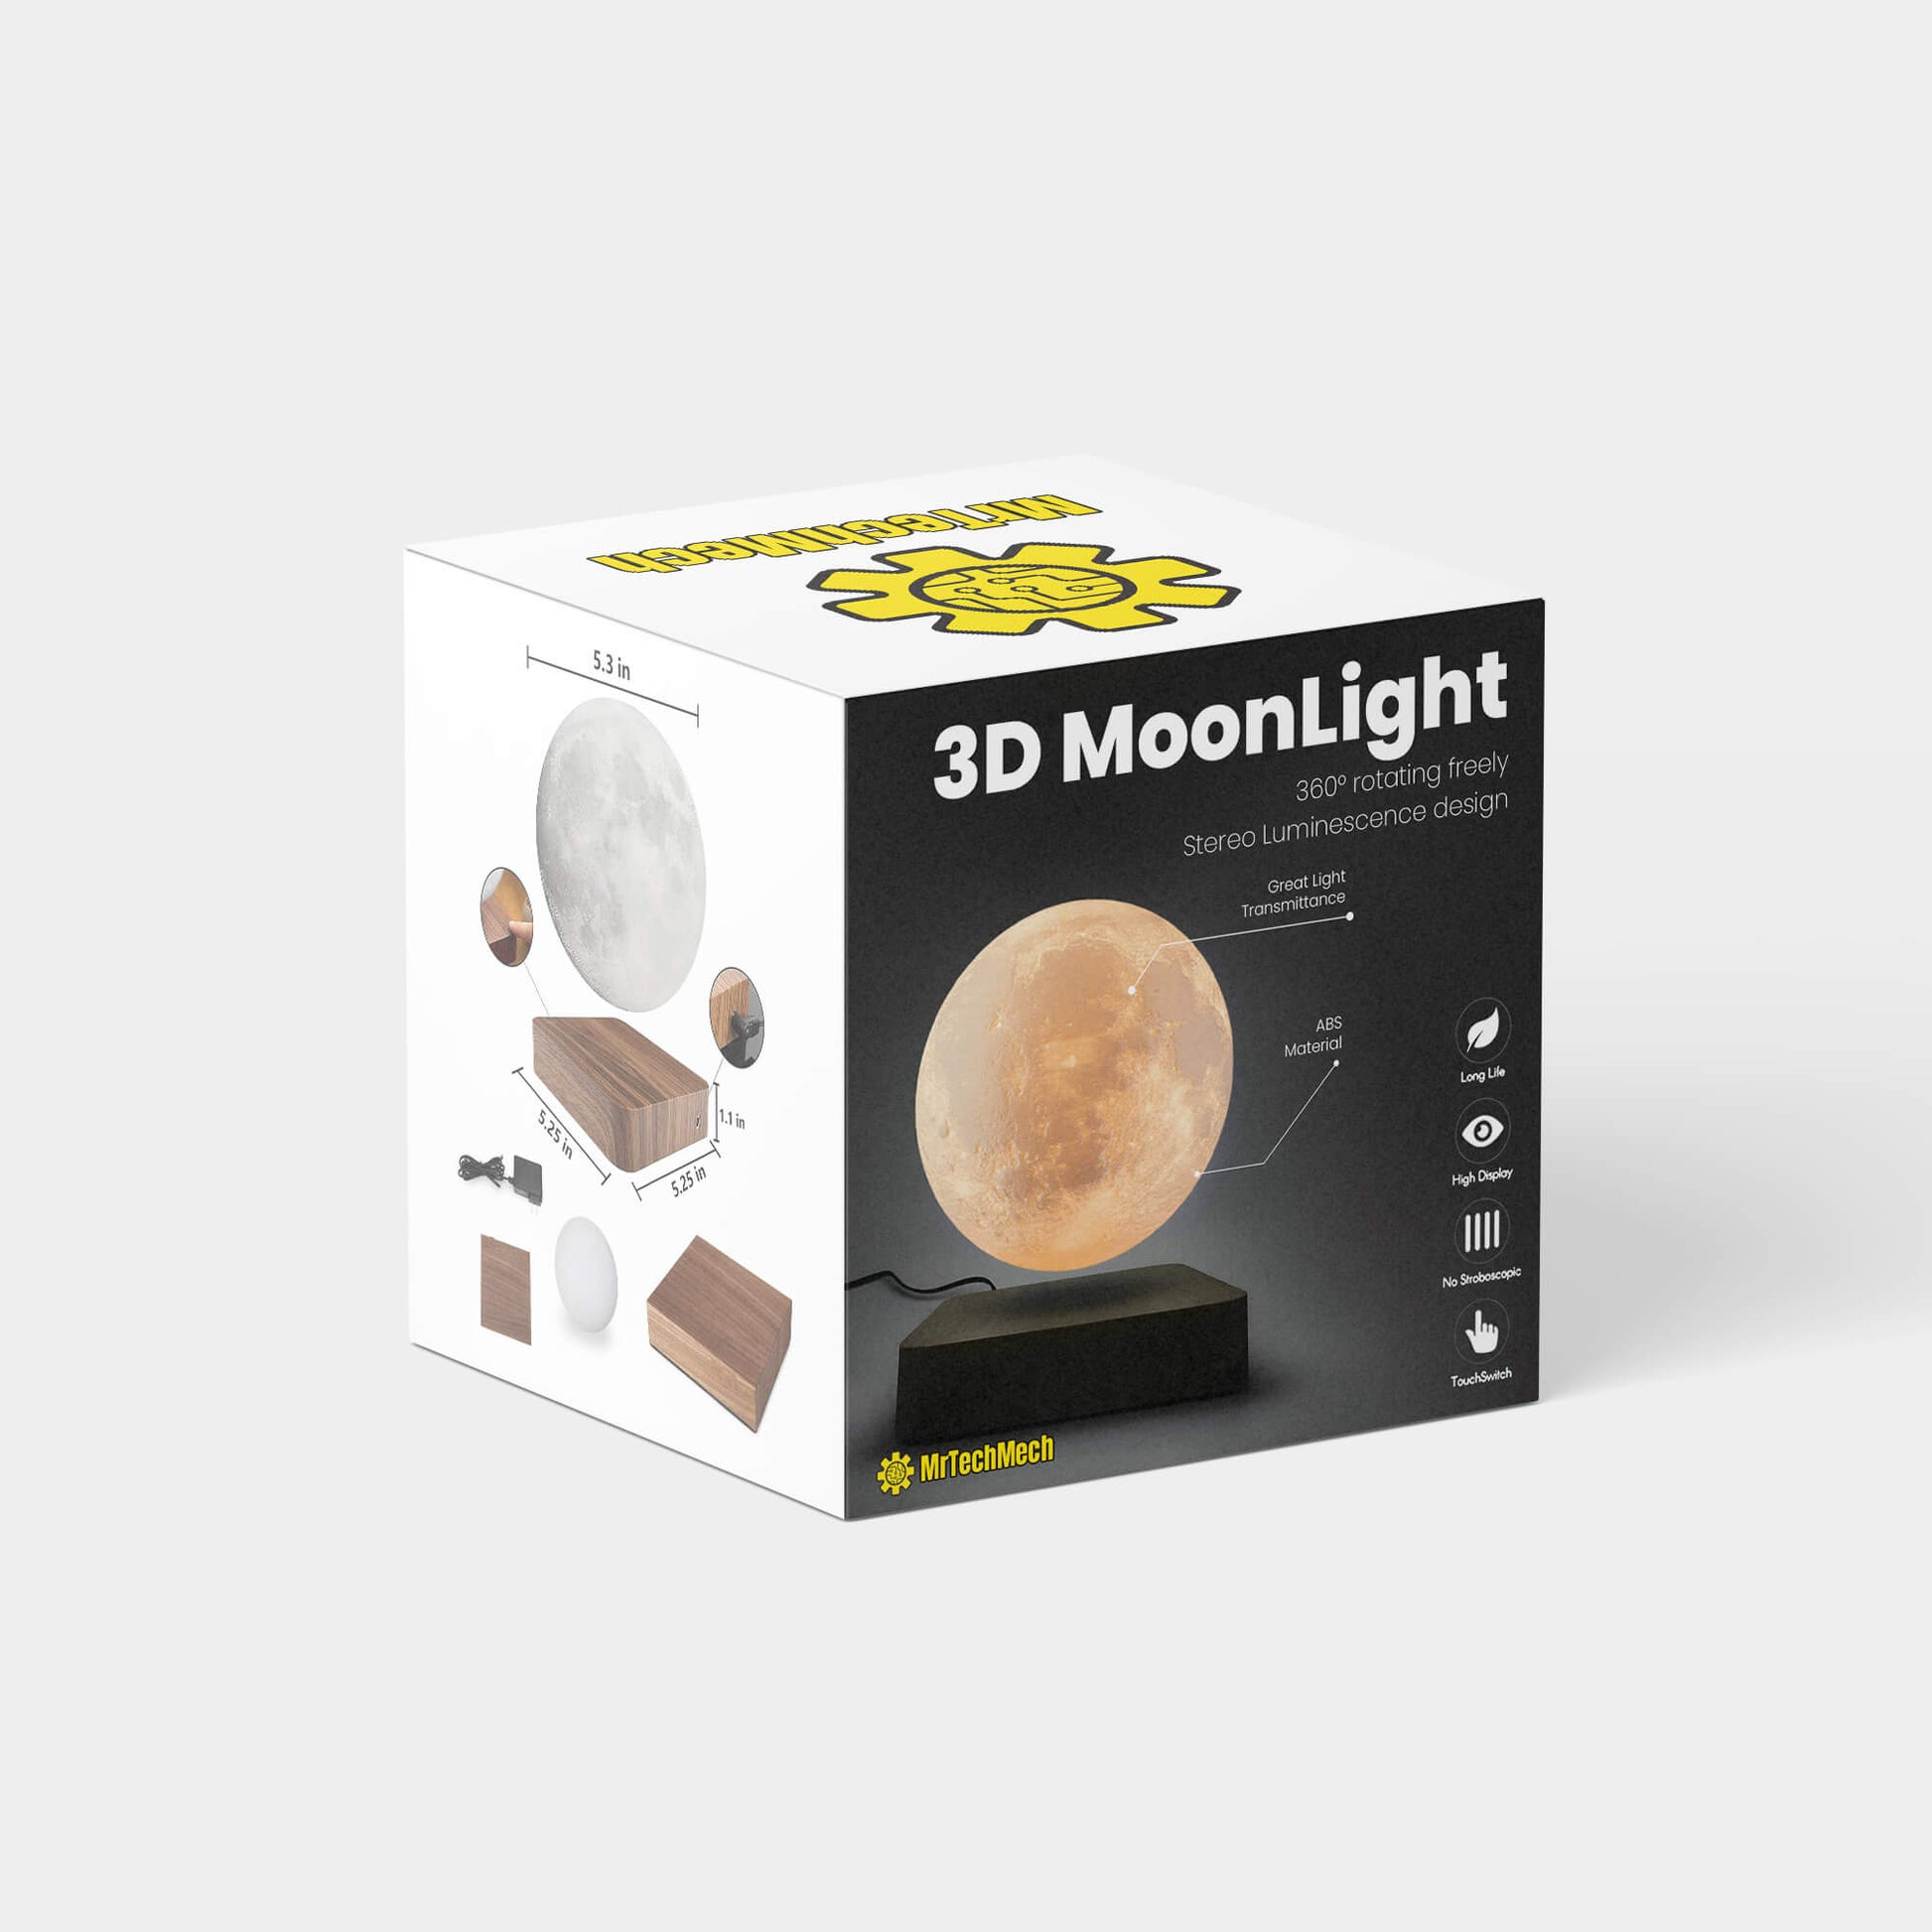 3D MoonLight